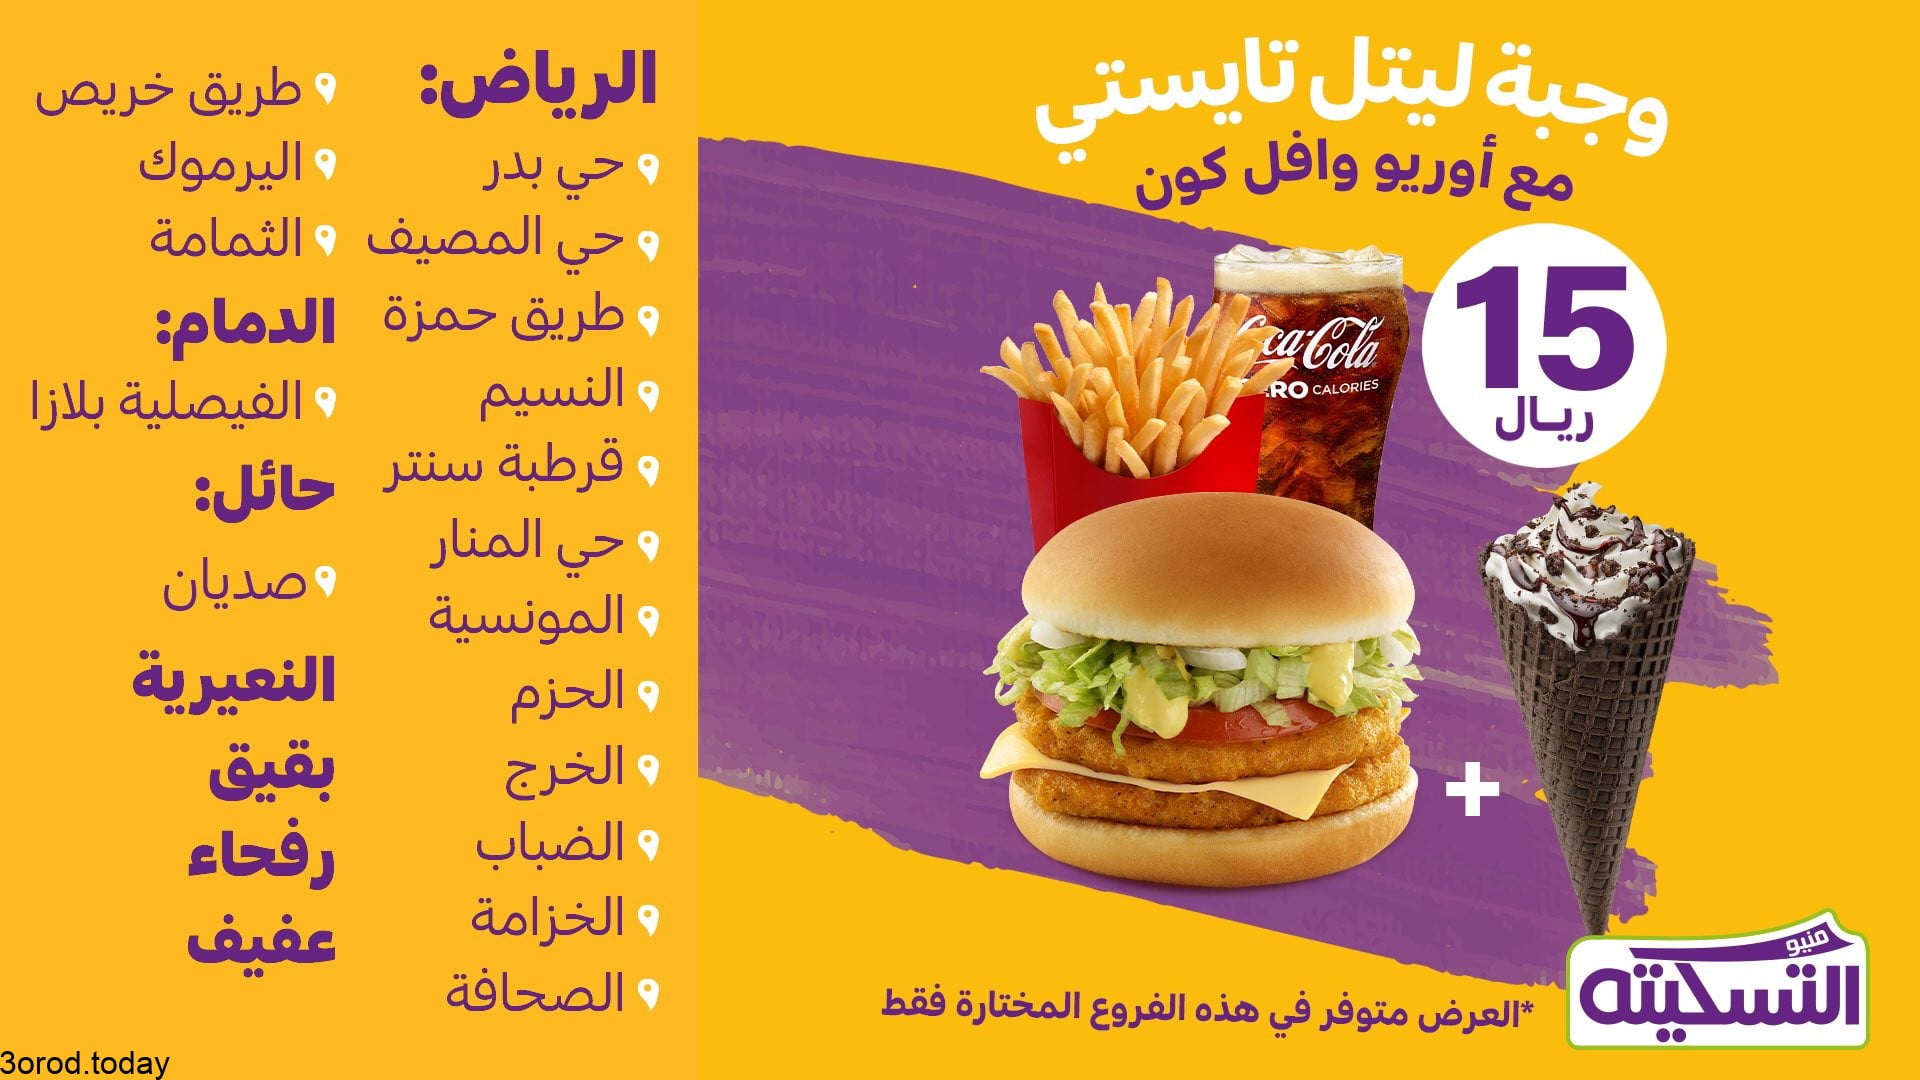 E cWRmGWQAQf6 - عروض المطاعم : عروض مطعم ماكدونالدز السعودية - الوسطى والشرقية بـ 15 ريال